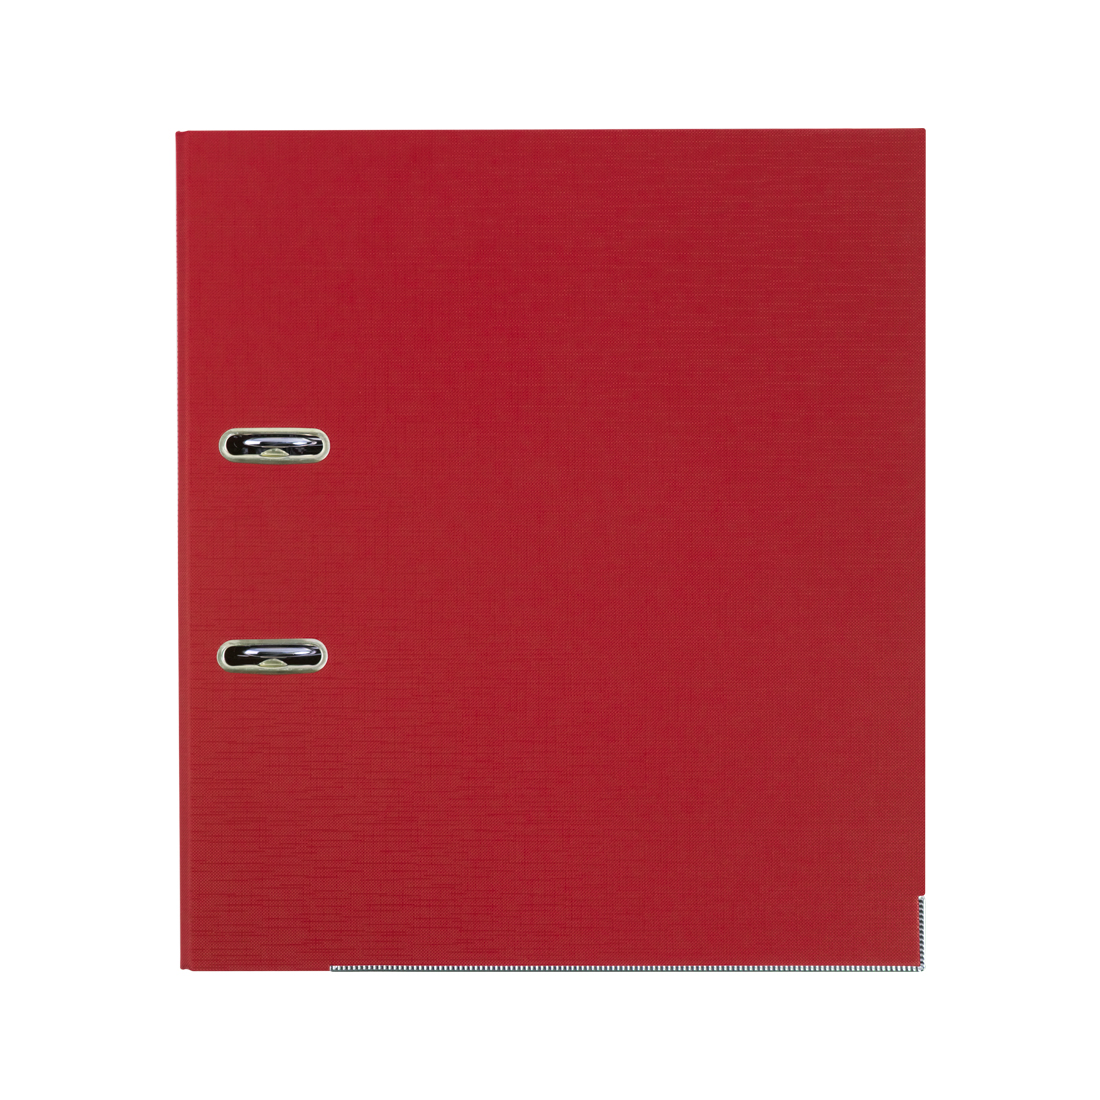 Папка-регистратор Deluxe с арочным механизмом, Office 2-RD24 (2" RED), А4, 50 мм, красный